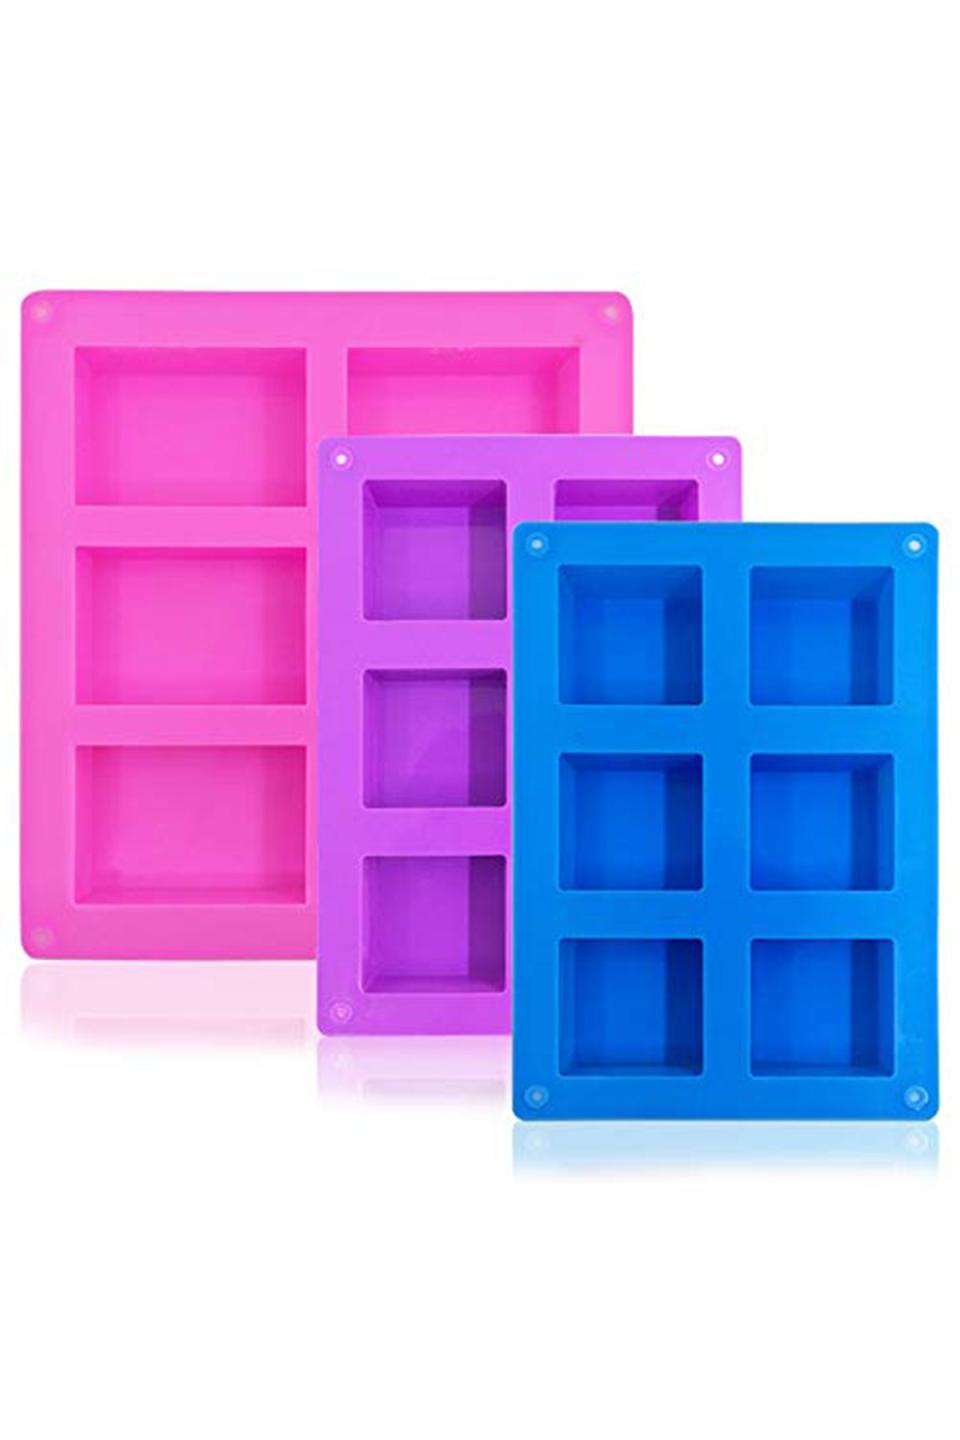 7) Use an ice cube tray.